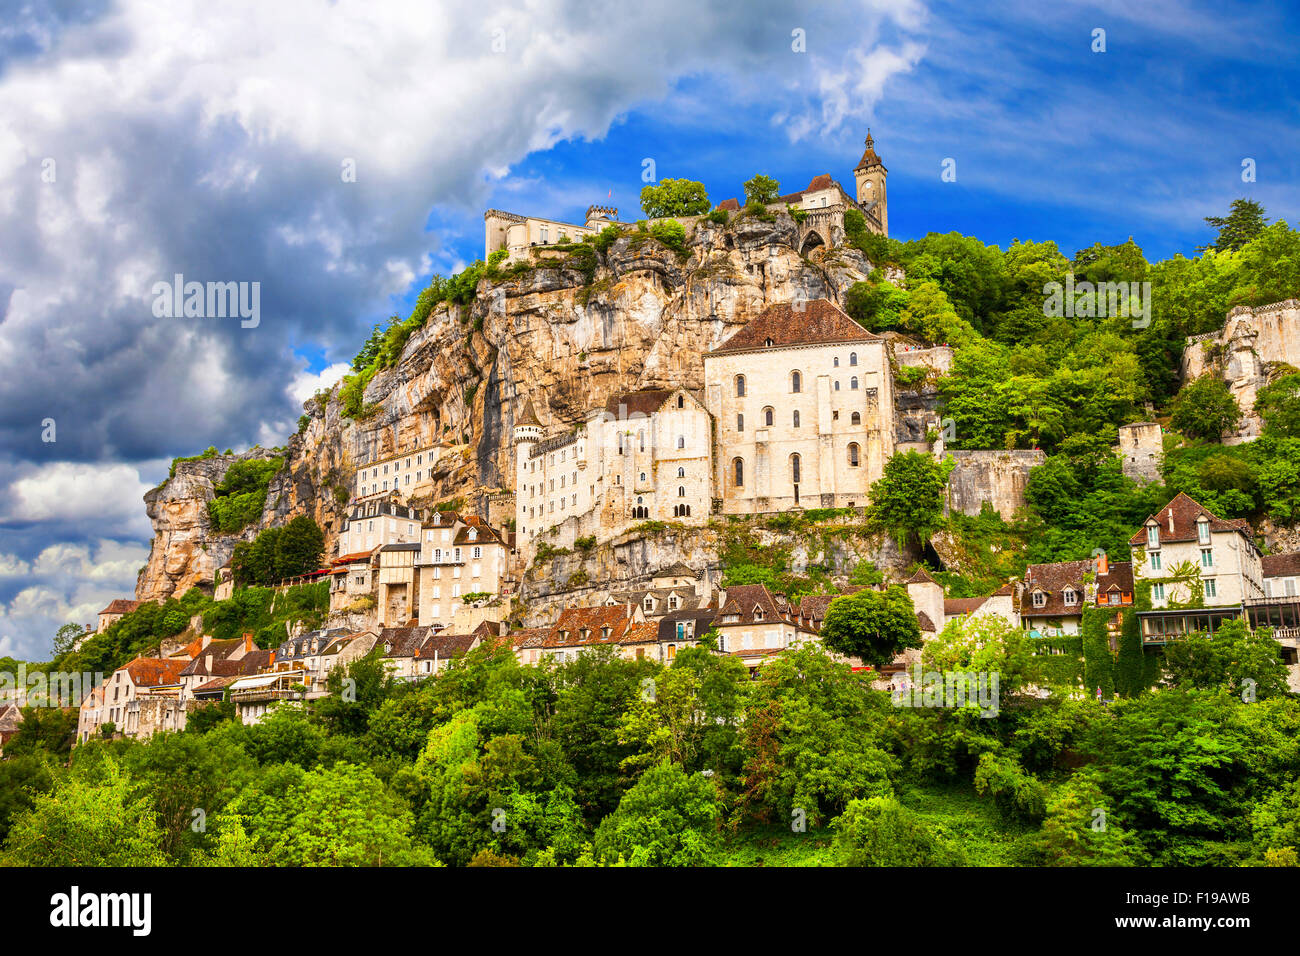 Rocamadour - village et château médiéval impressionnant en France, attraction touristique Banque D'Images